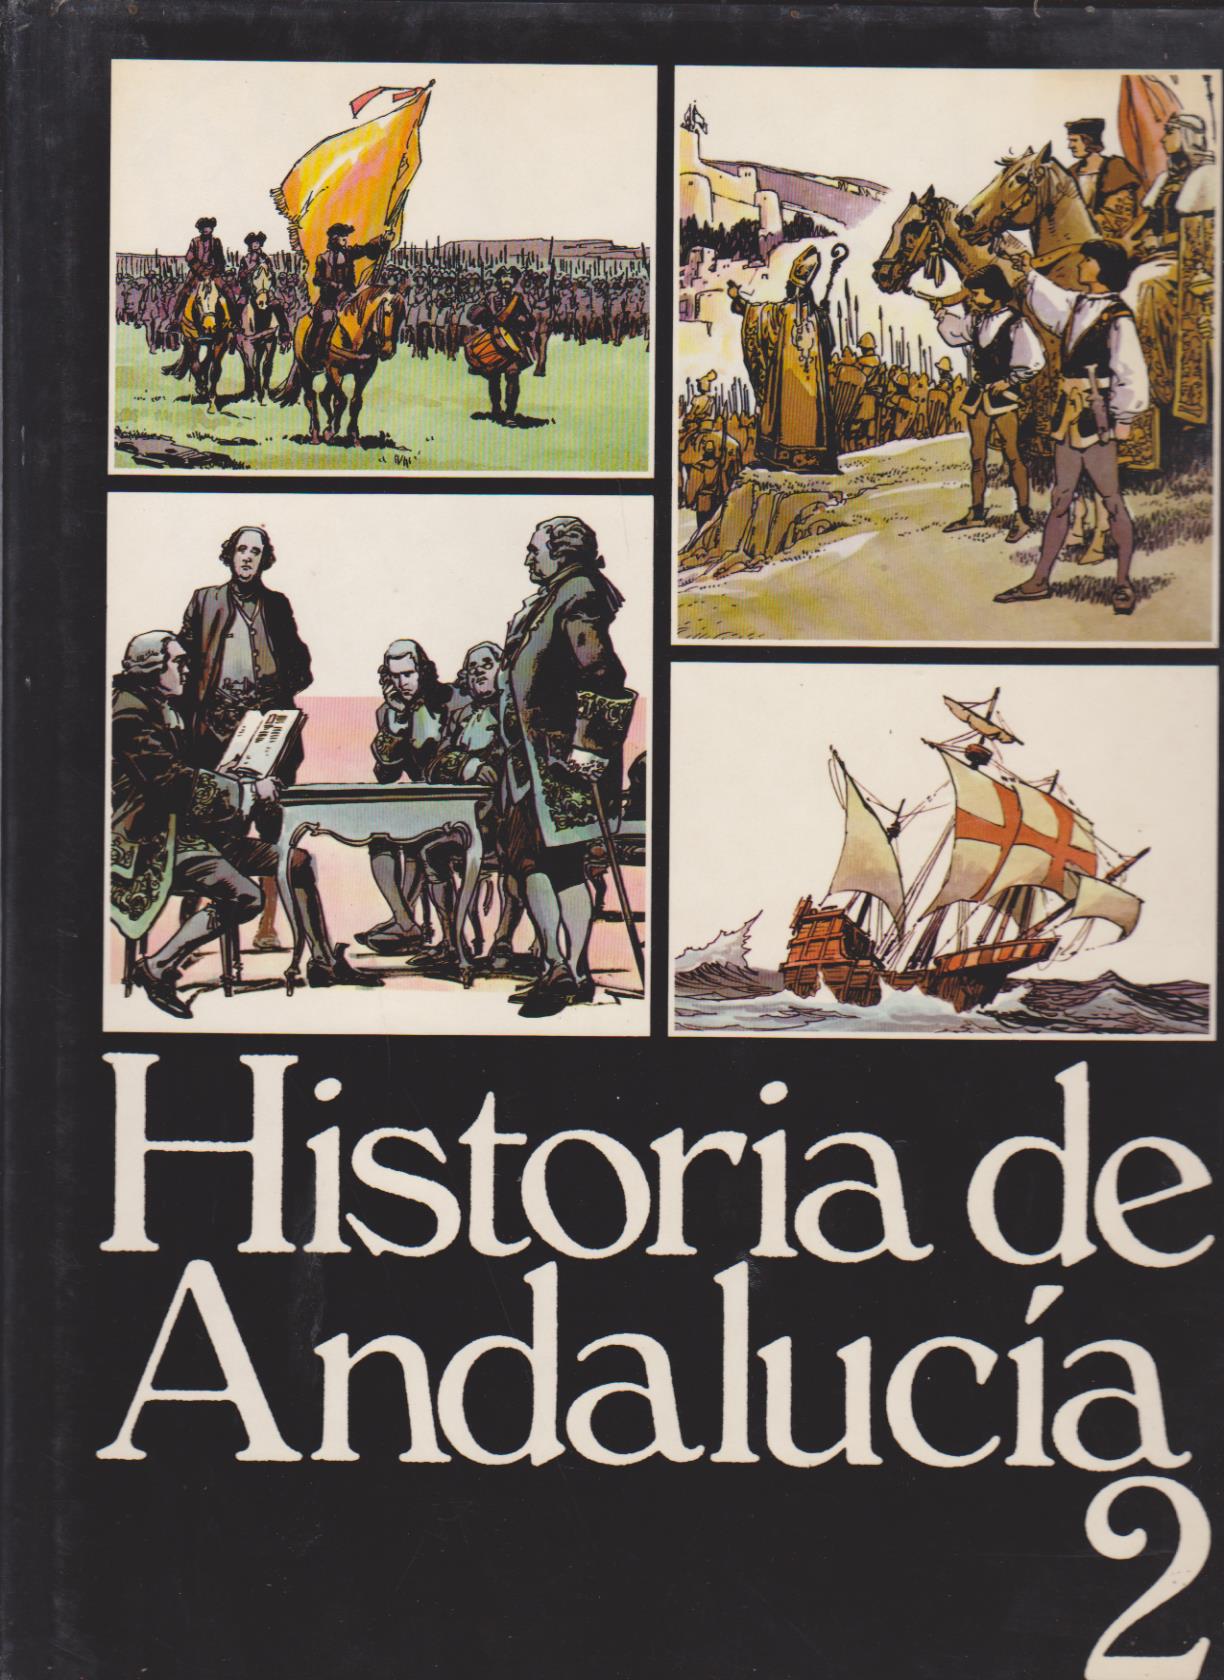 Historia de Andalucía Tomo nº 2. Monte de Piedad Sevilla 1983